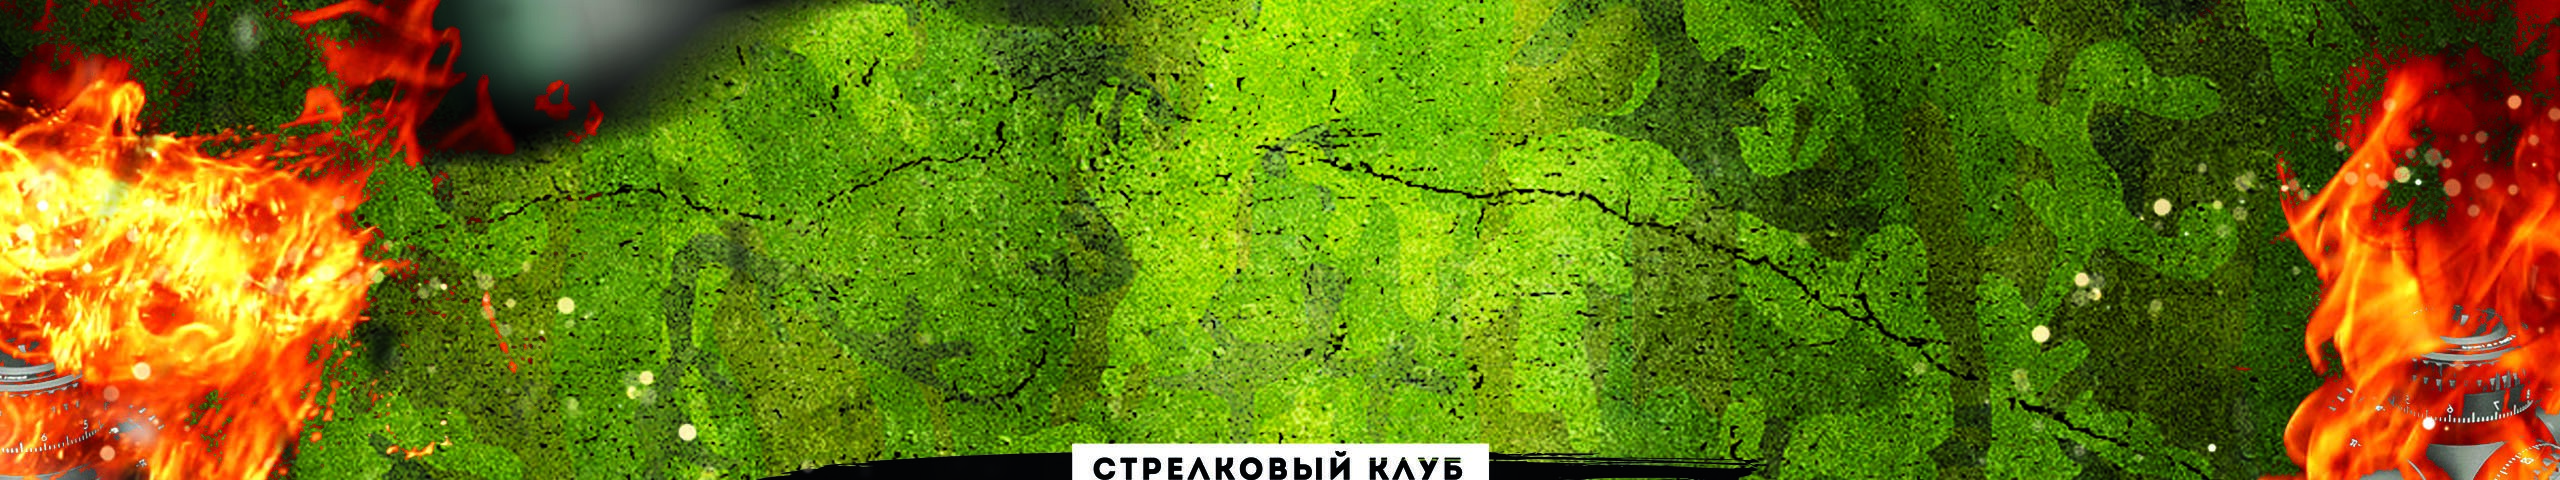 обложка автора Петр Суховинский